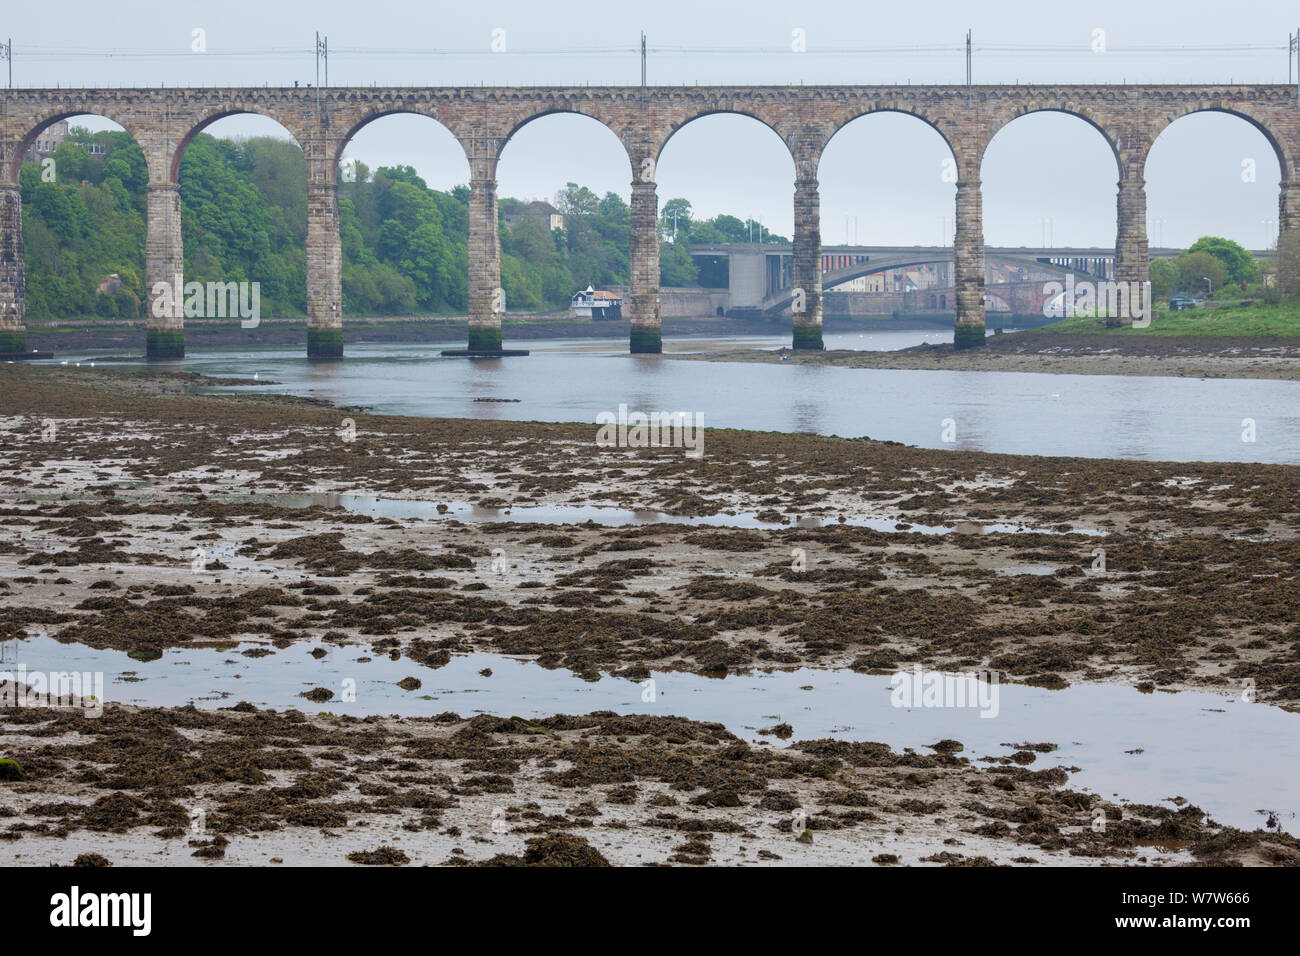 La boue estuariens exposés à marée basse sous le pont frontière royale sur la rivière Tweed, Berwick upon Tweed, Northumberland, Angleterre. Banque D'Images